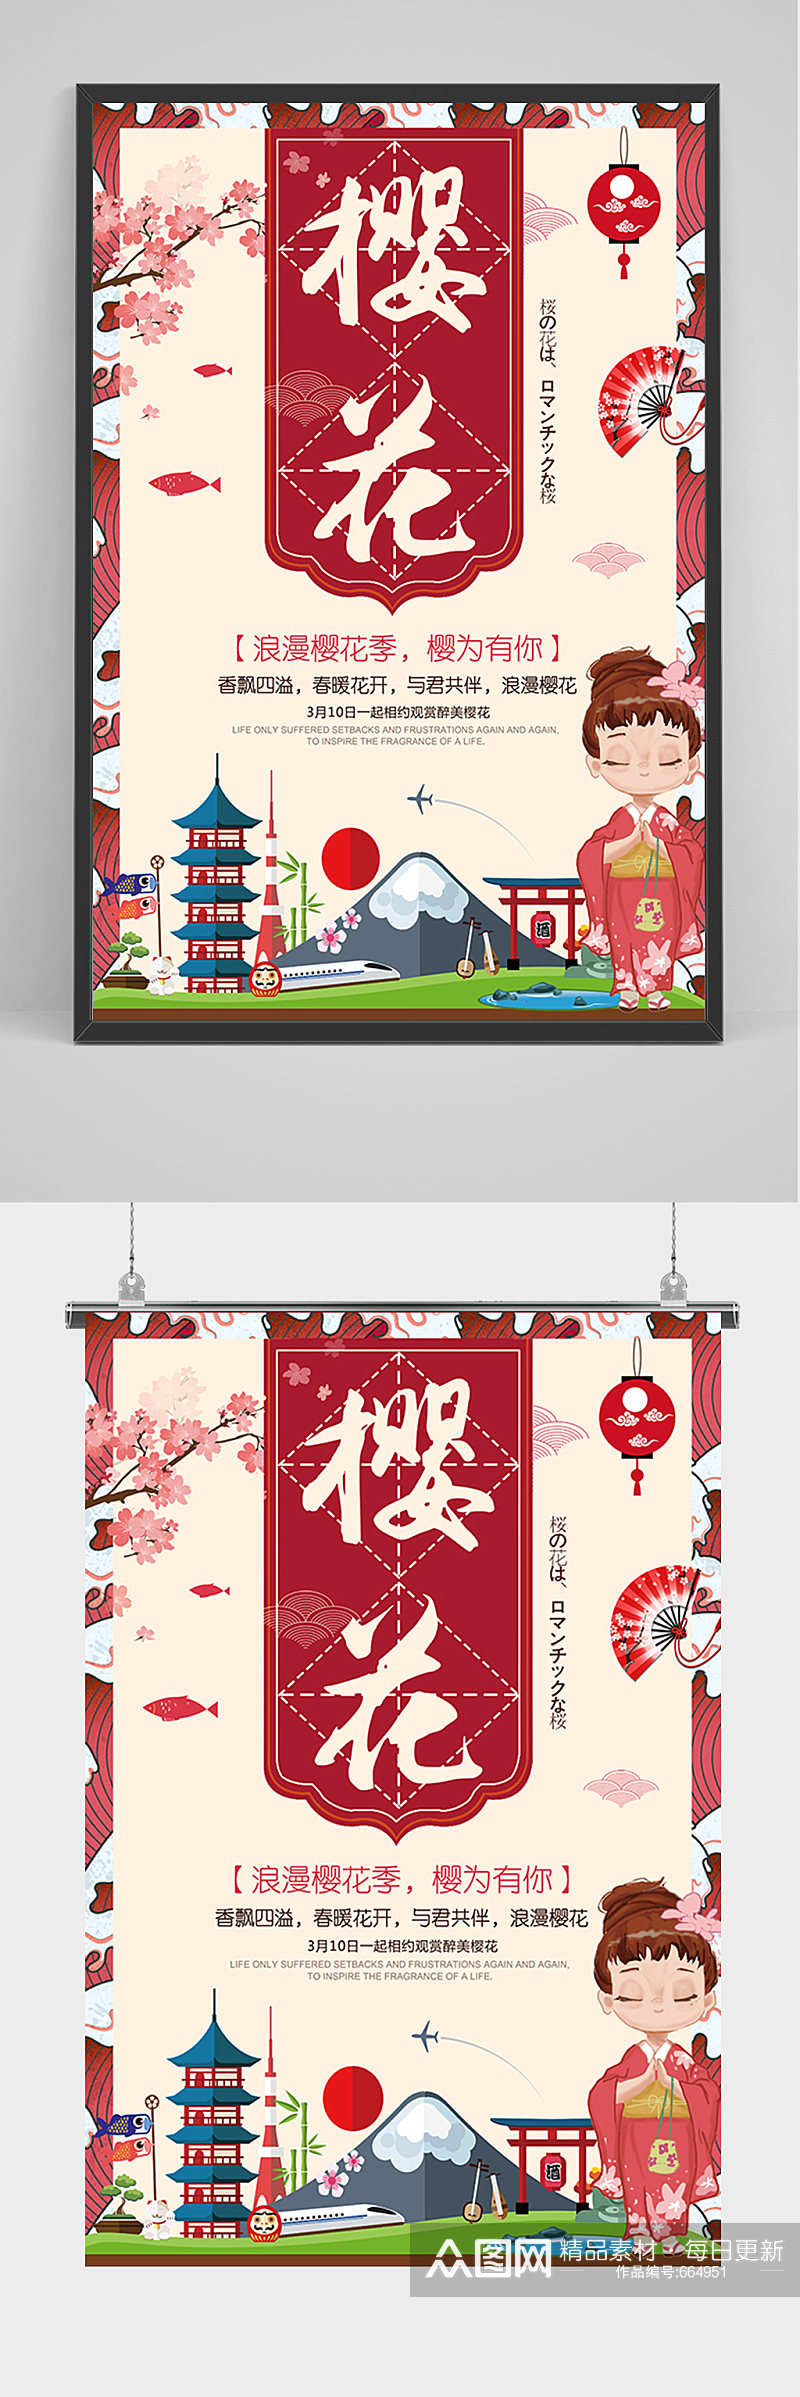 日本旅游樱花樱花节海报素材